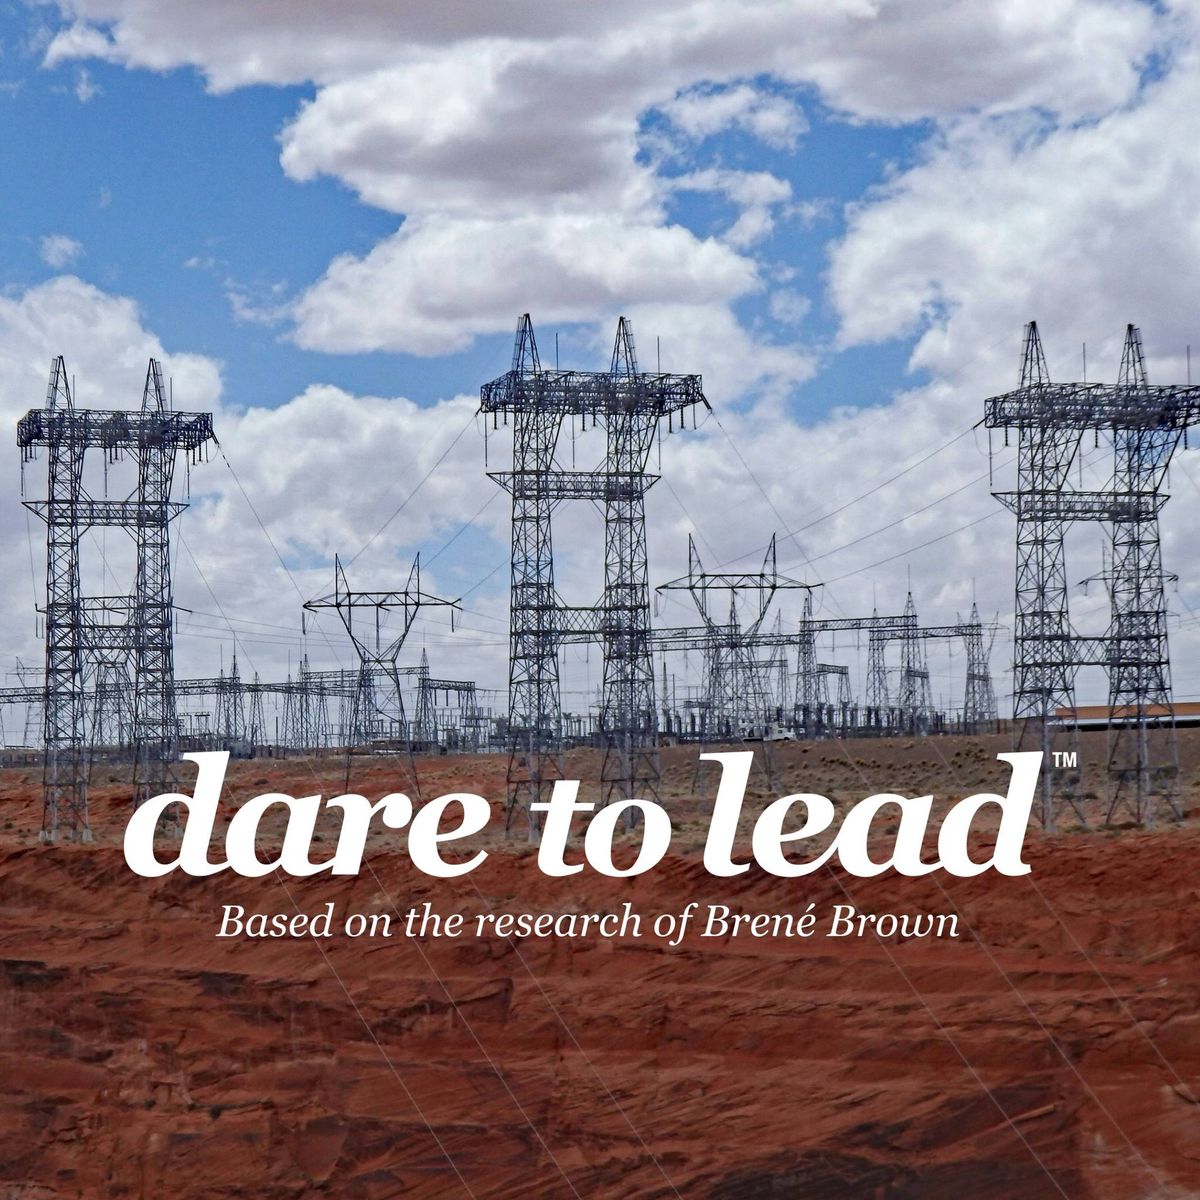 Dare to Lead\u2122 Workshop - Energy\/Utility Leaders